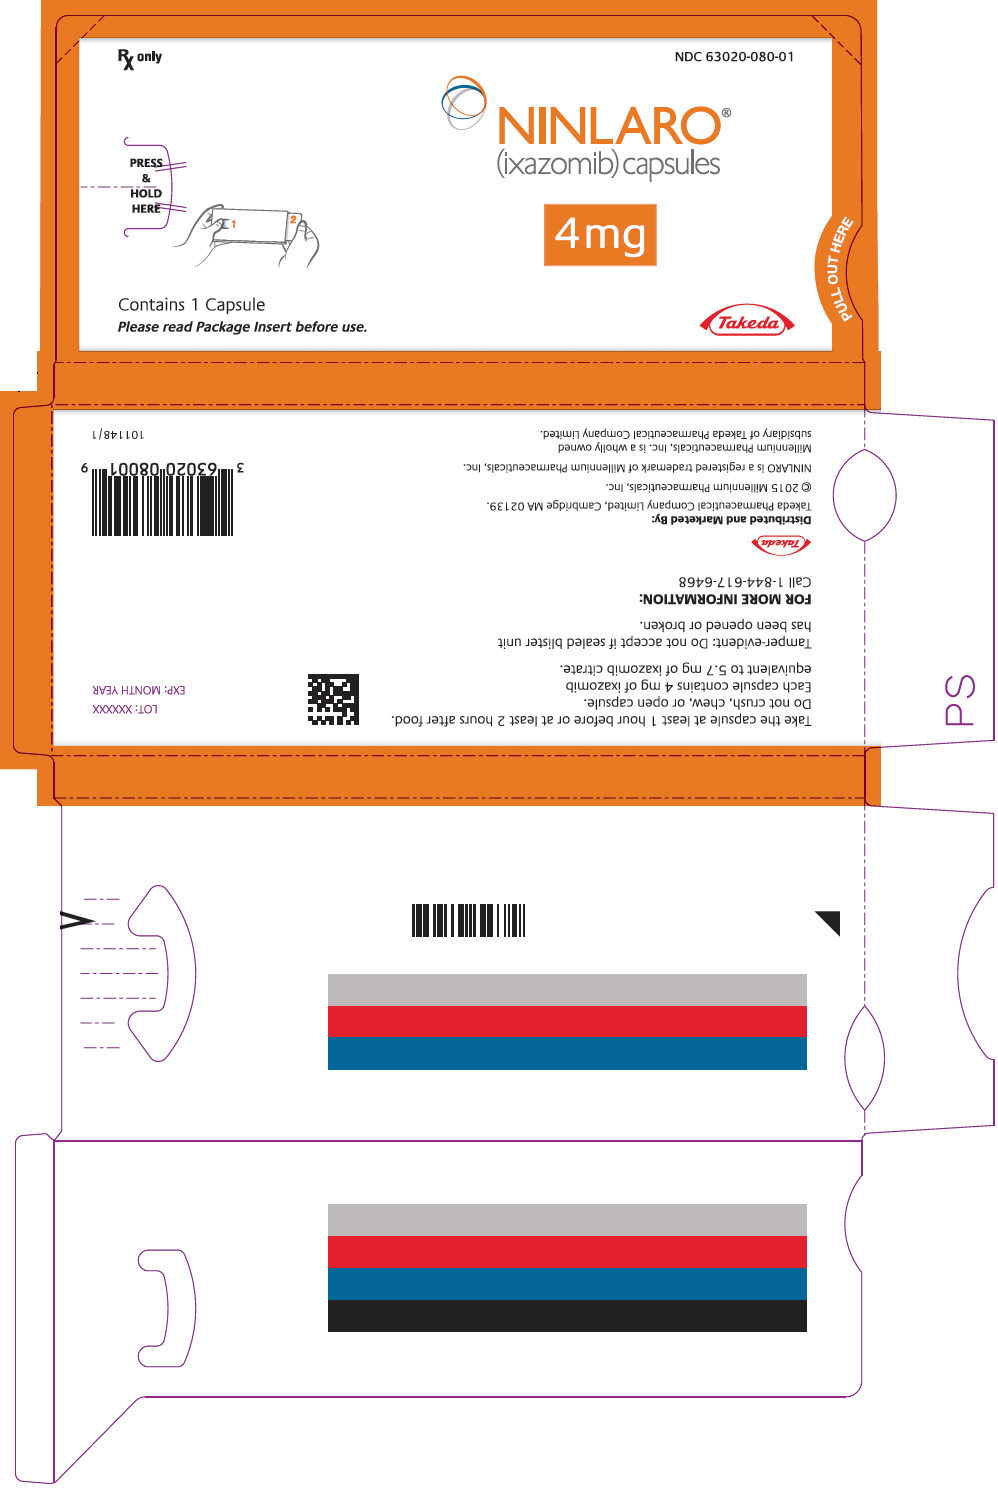 PRINCIPAL DISPLAY PANEL - 4 mg Capsule Blister Pack